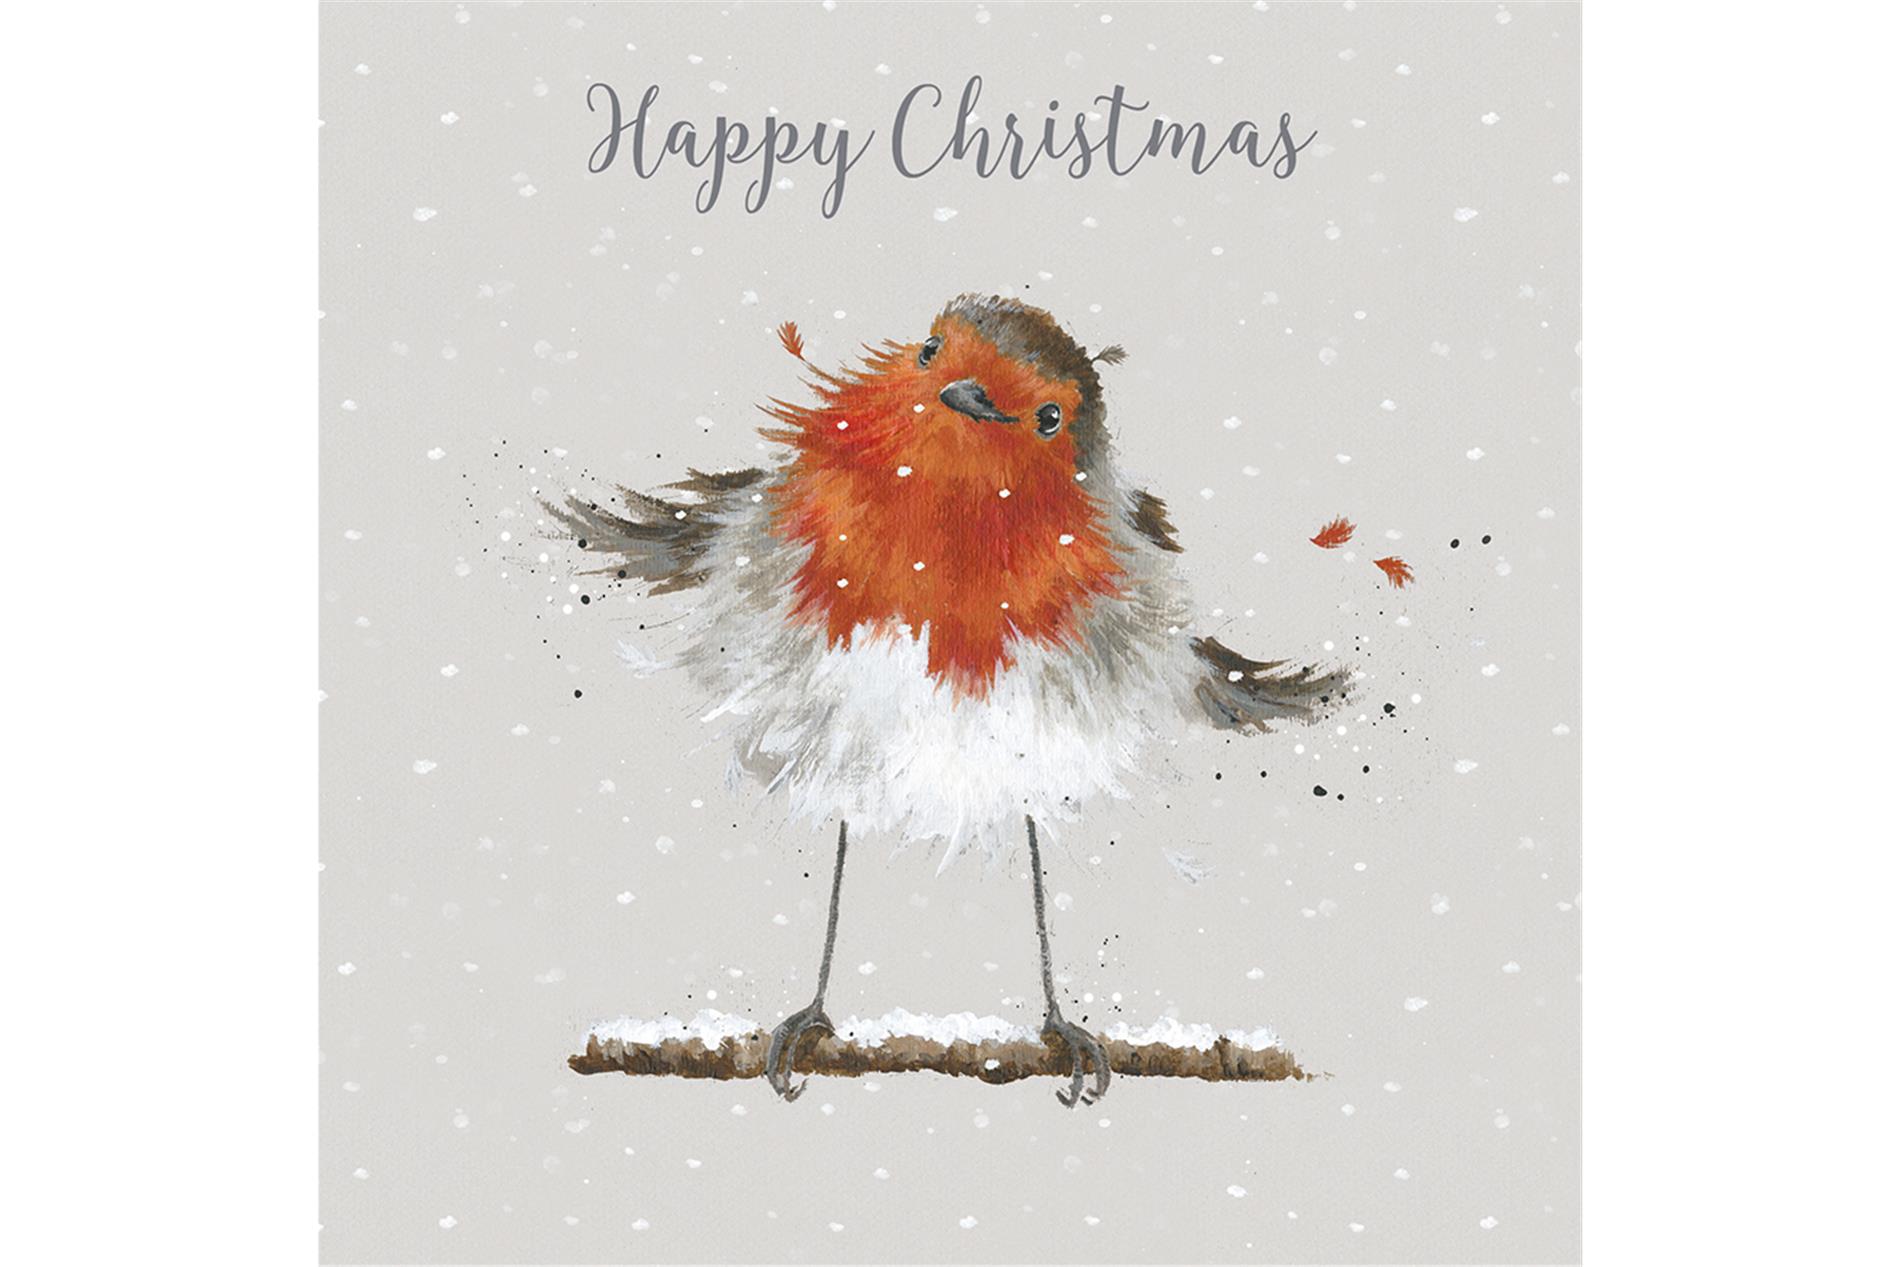 Wrendale Weihnachtskartenbox Happy Christmas, Motiv Rotkehlchen, 8 Karten mit Umschlag und Text, 15,5x15,5 cm